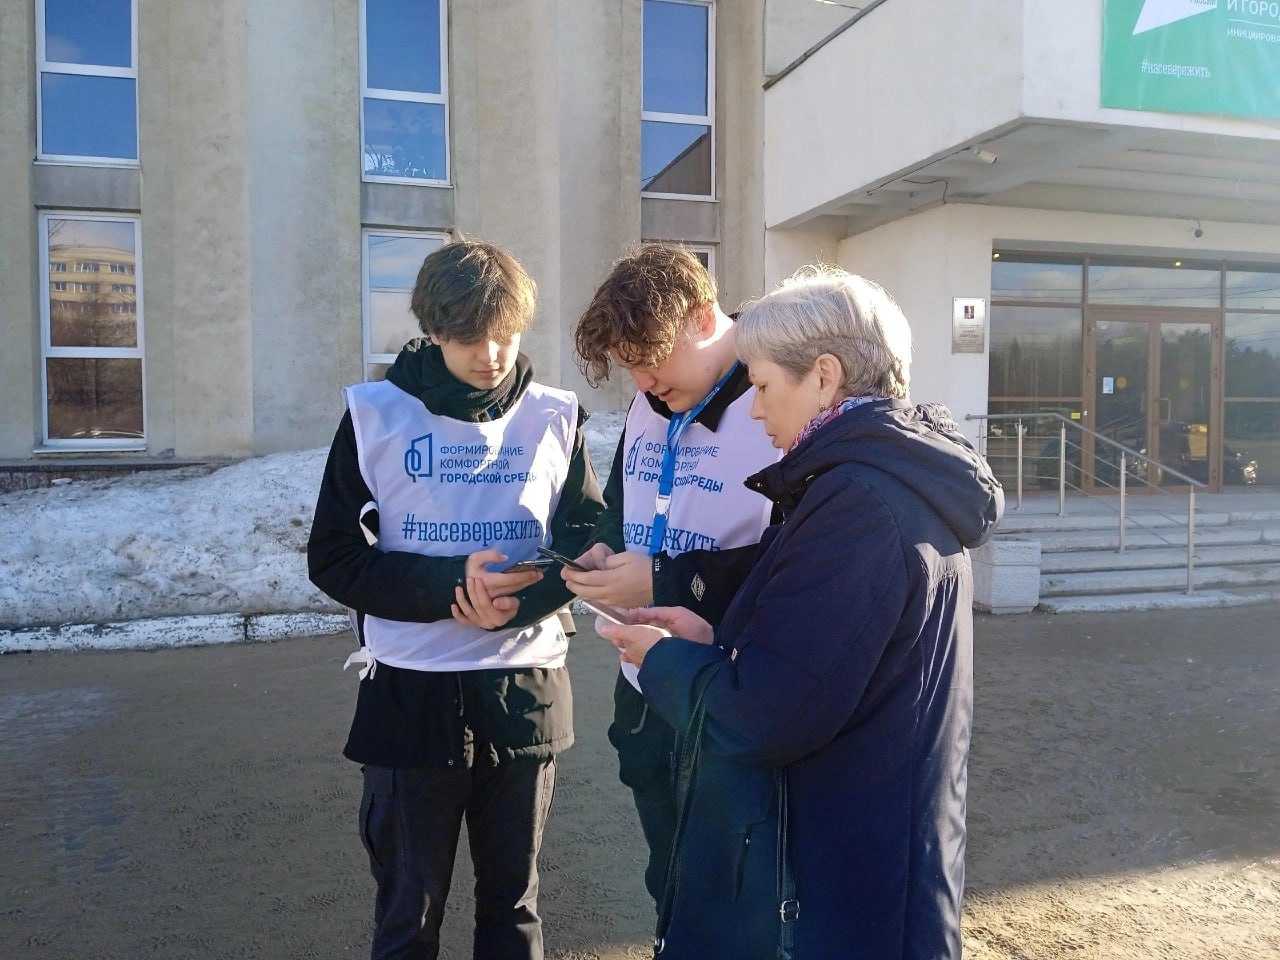 Жителей Мурманской области приглашают стать волонтерами проекта «Формирование комфортной городской среды».